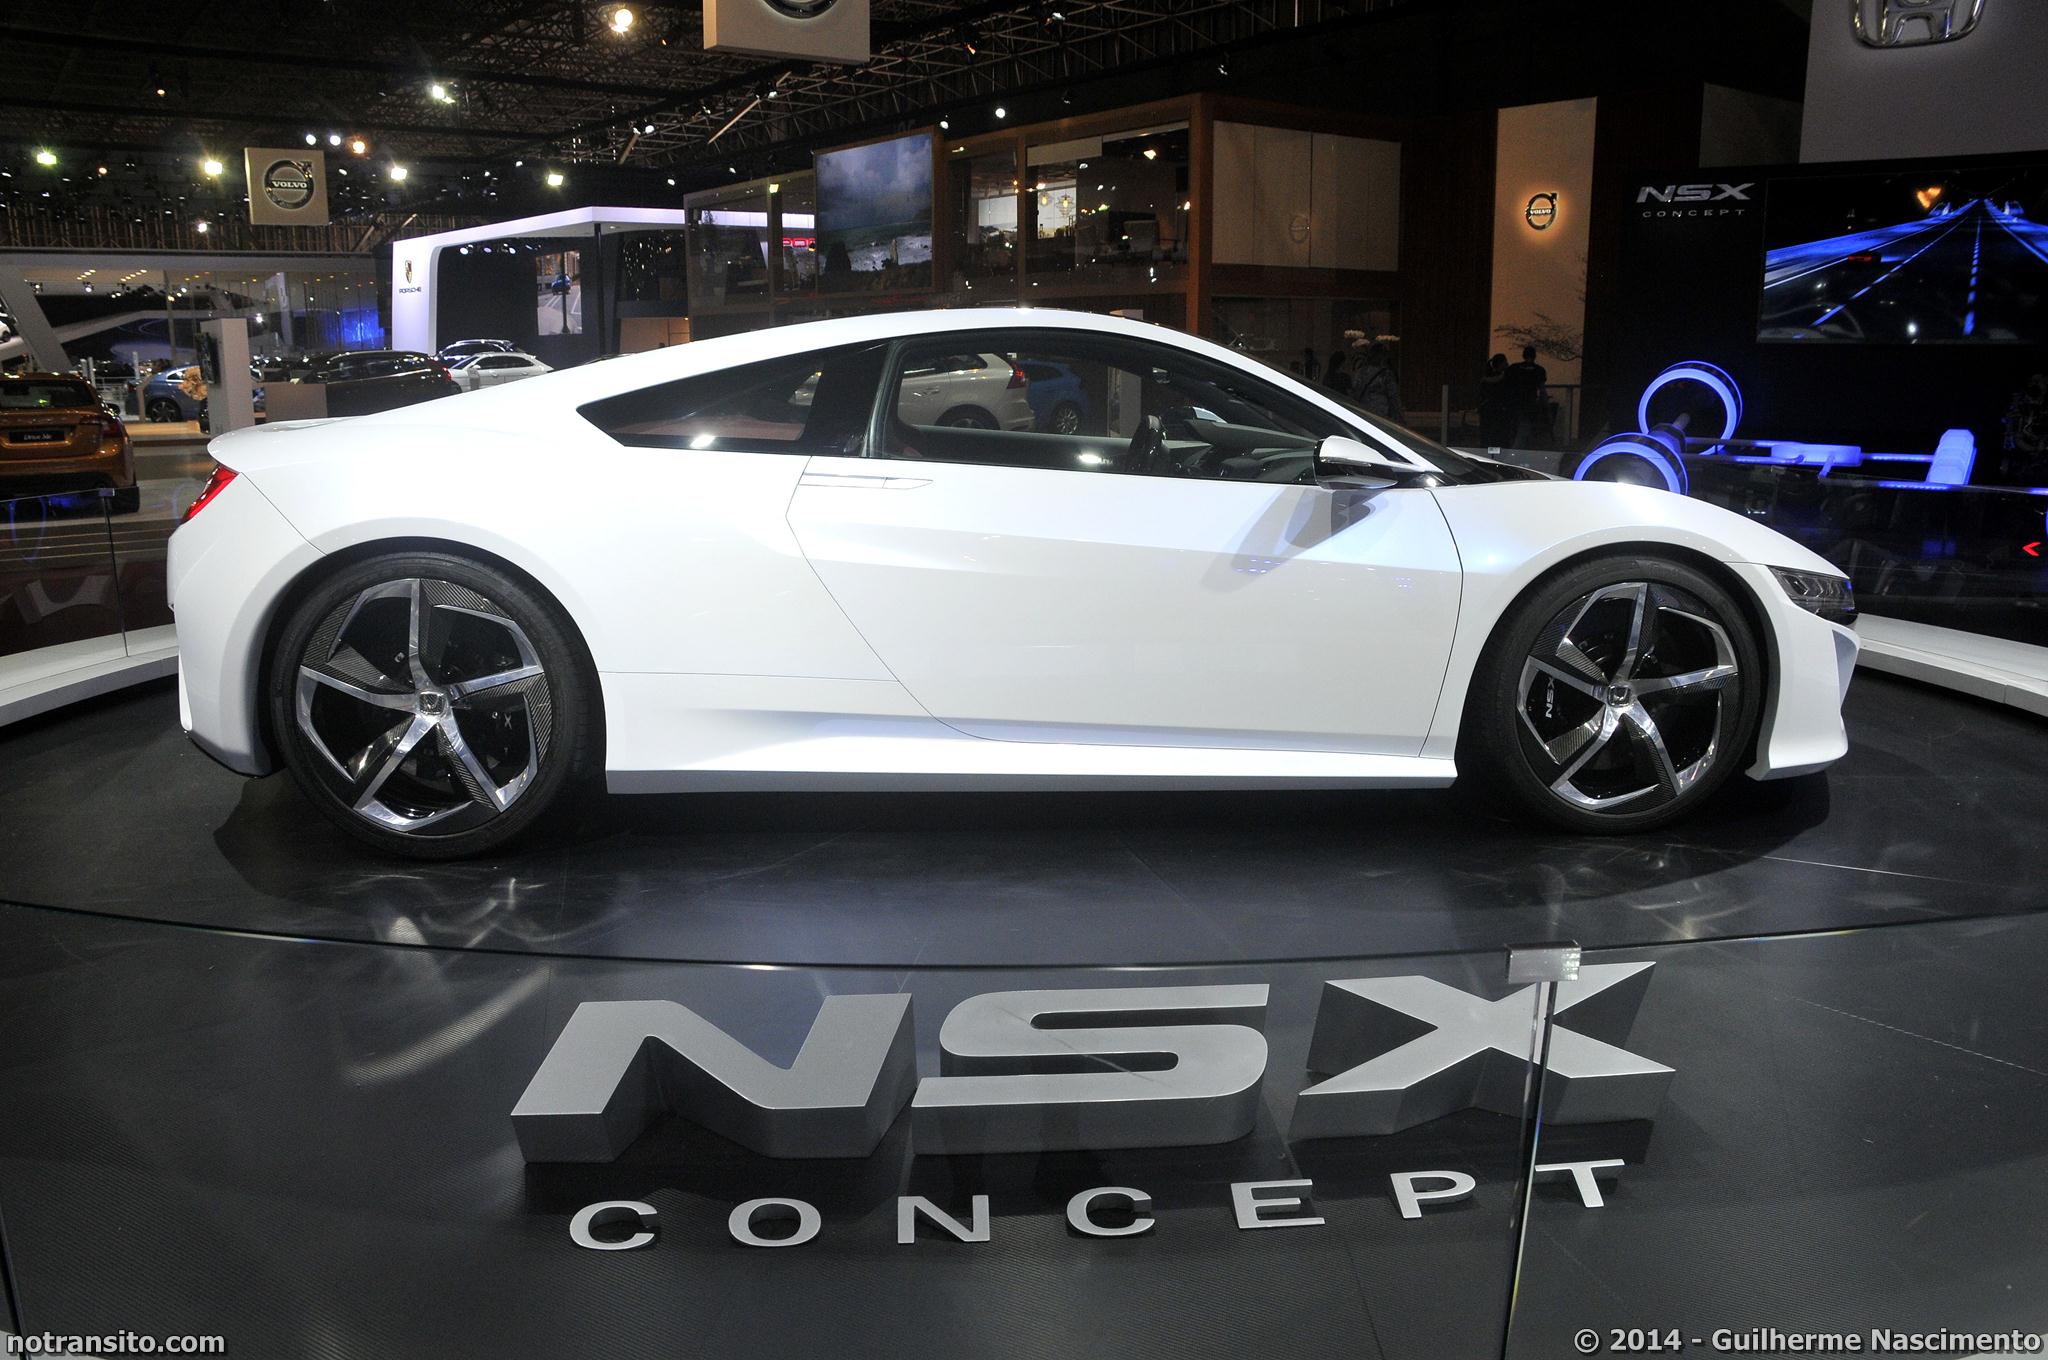 Honda NSX Concept no Salão do Automóvel de São Paulo em 2014. Foto: Guilherme Nascimento